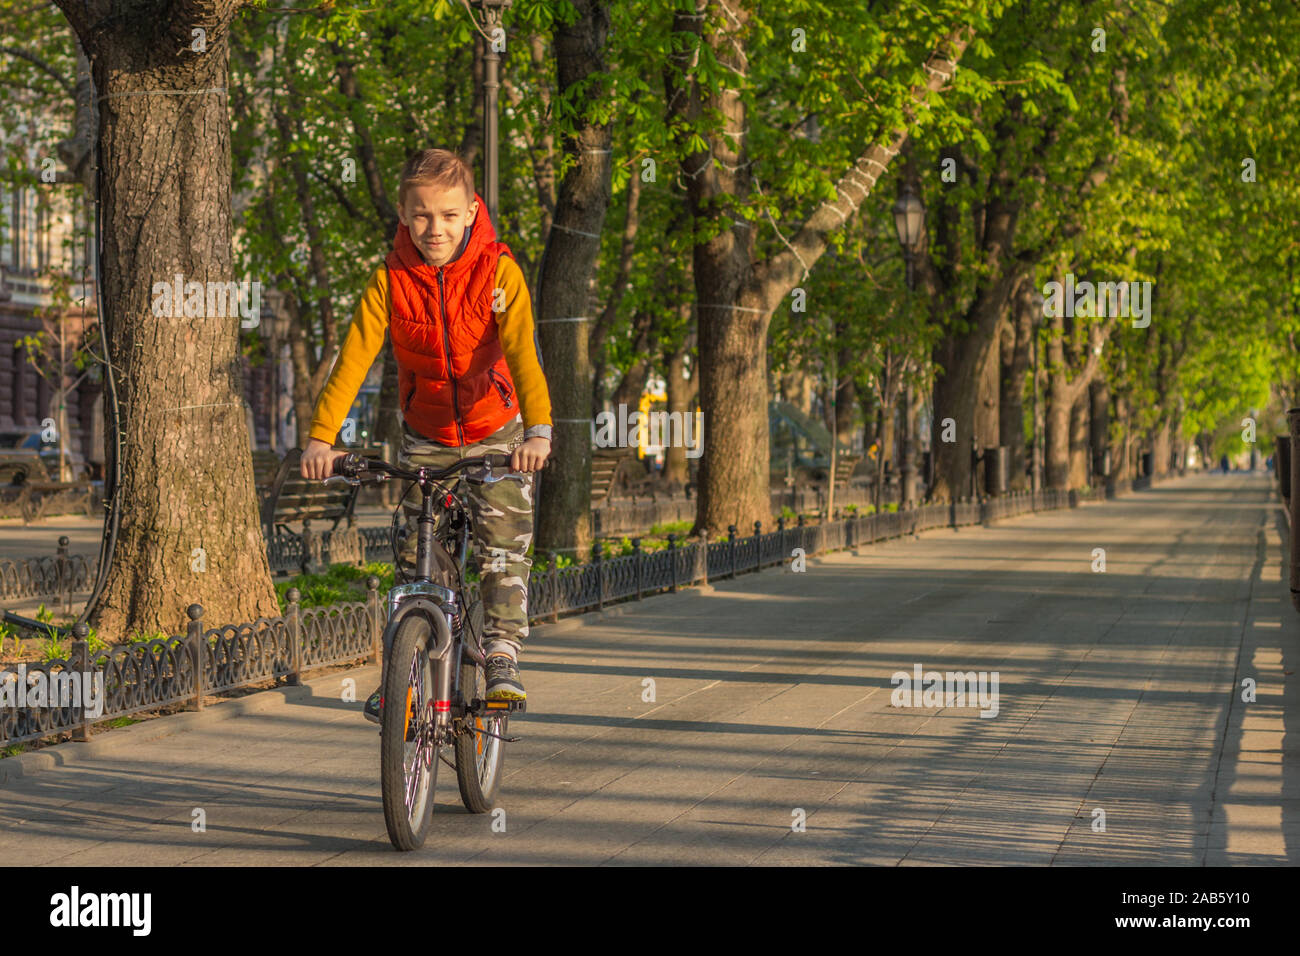 Un ragazzo di 8 anni in un giubbotto arancione corse in bicicletta in un parco della città su una soleggiata mattina di primavera Foto Stock